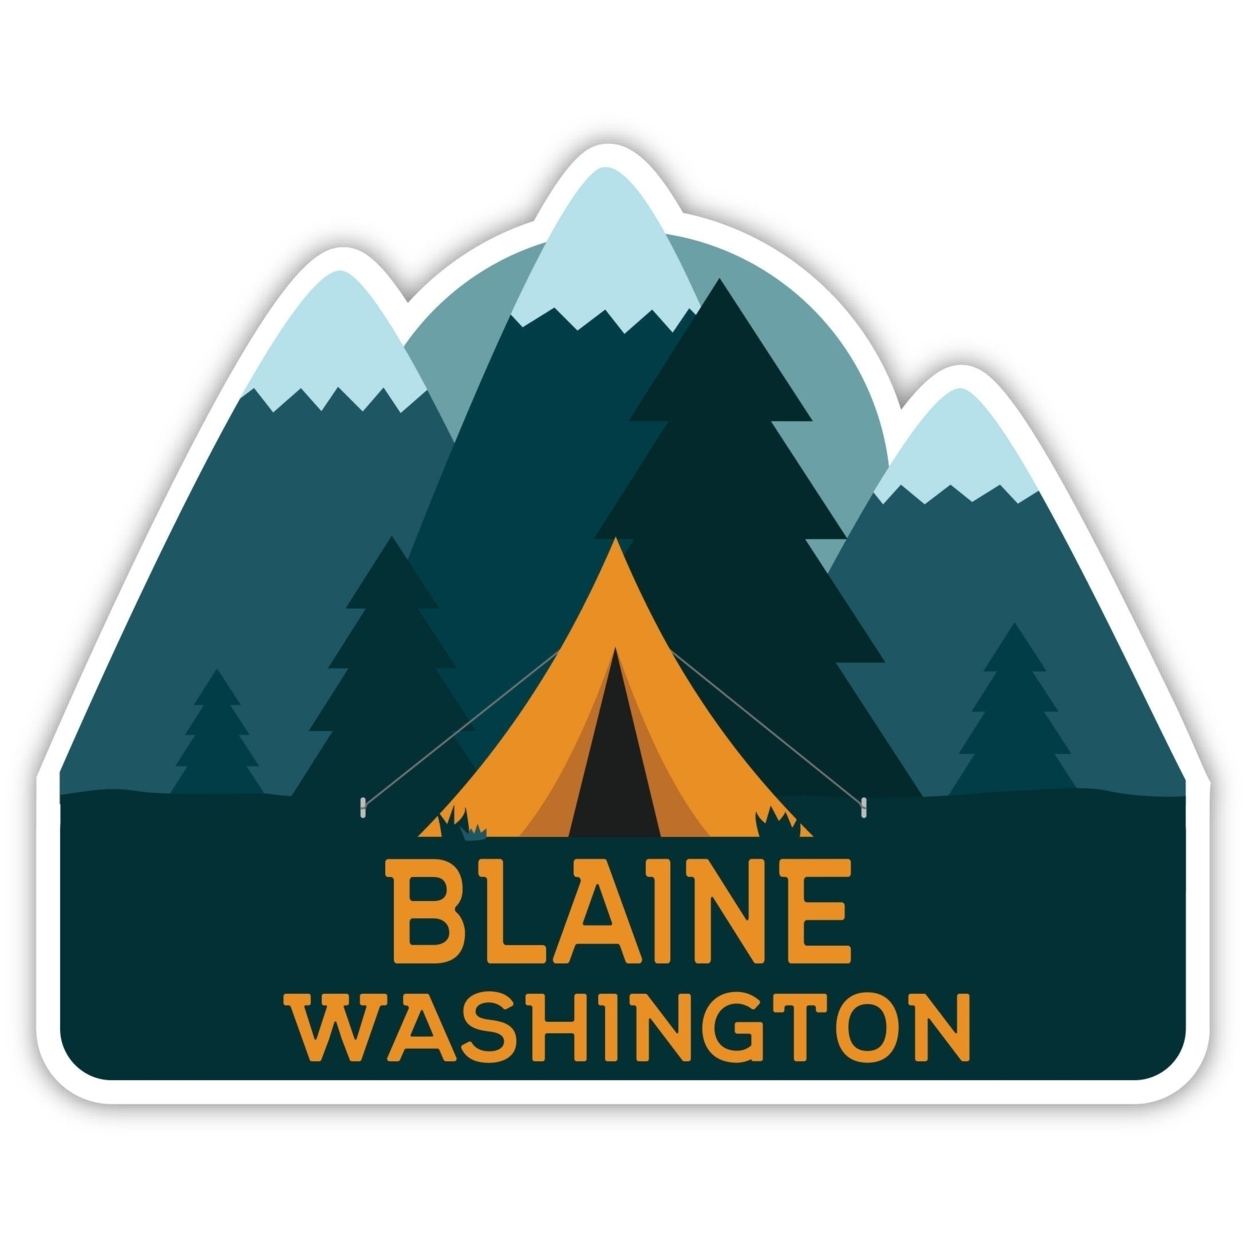 Blaine Washington Souvenir Decorative Stickers (Choose Theme And Size) - 4-Pack, 8-Inch, Tent